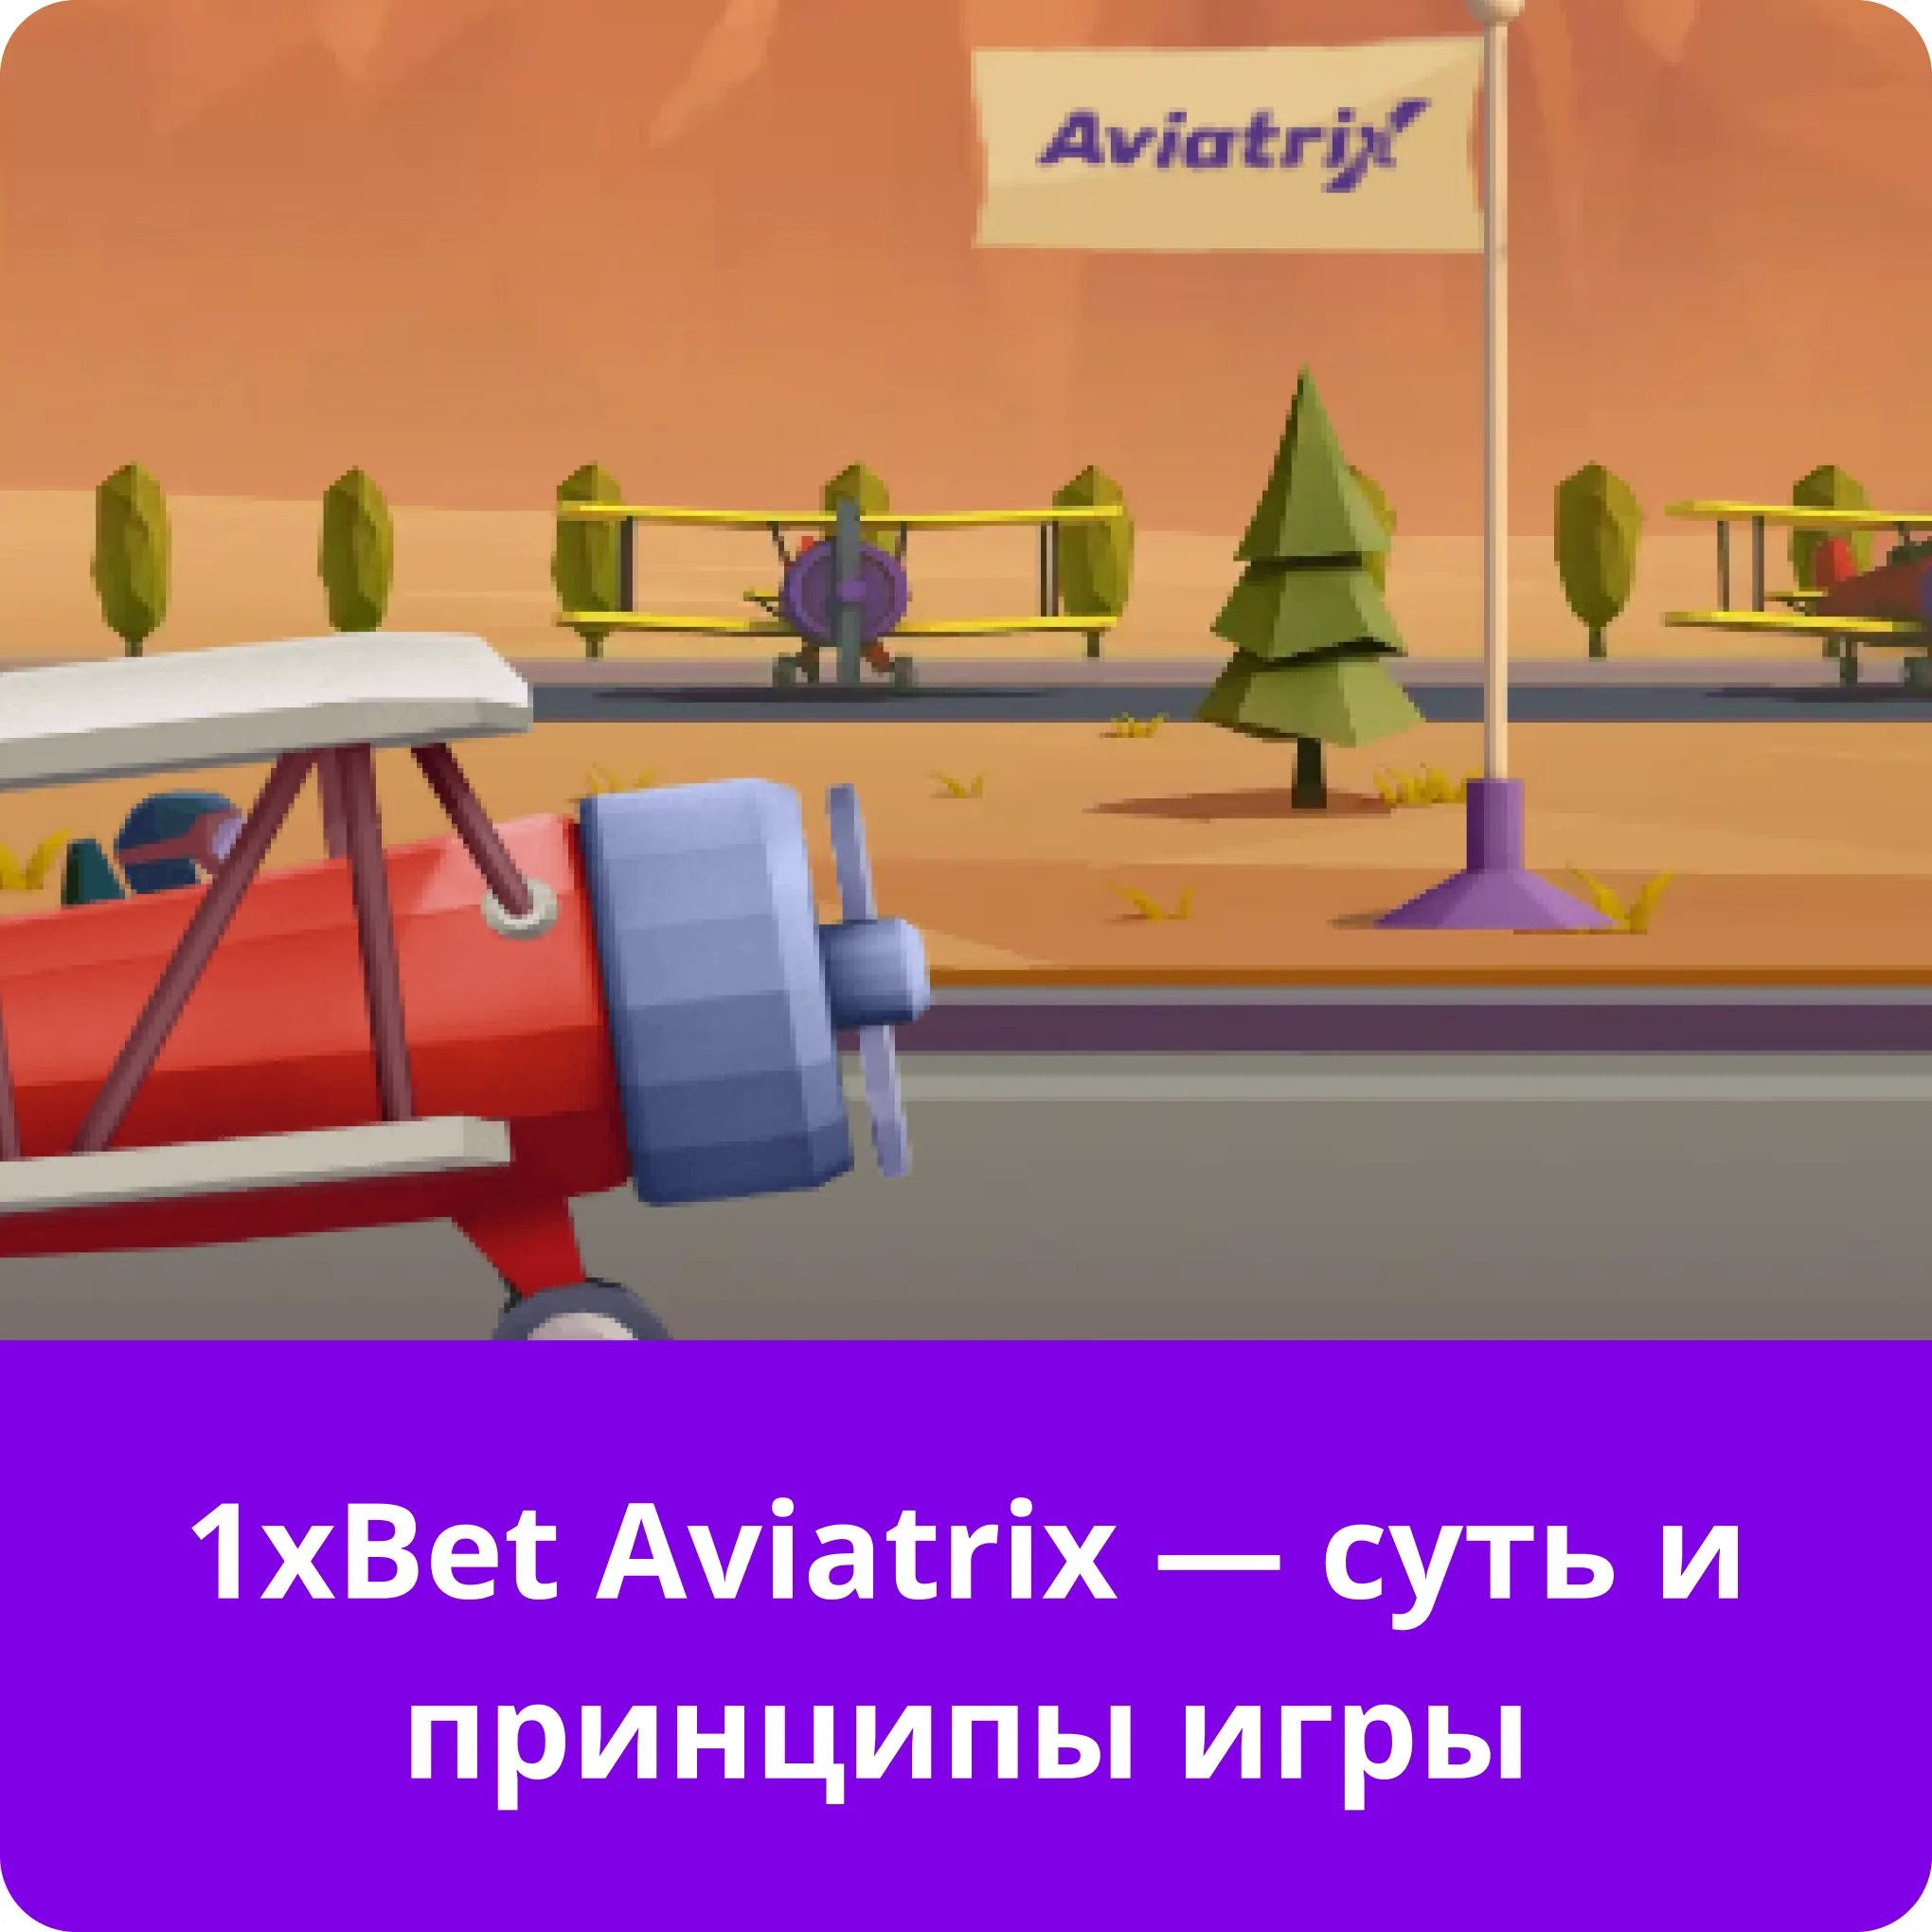 1xbet aviatrix игра